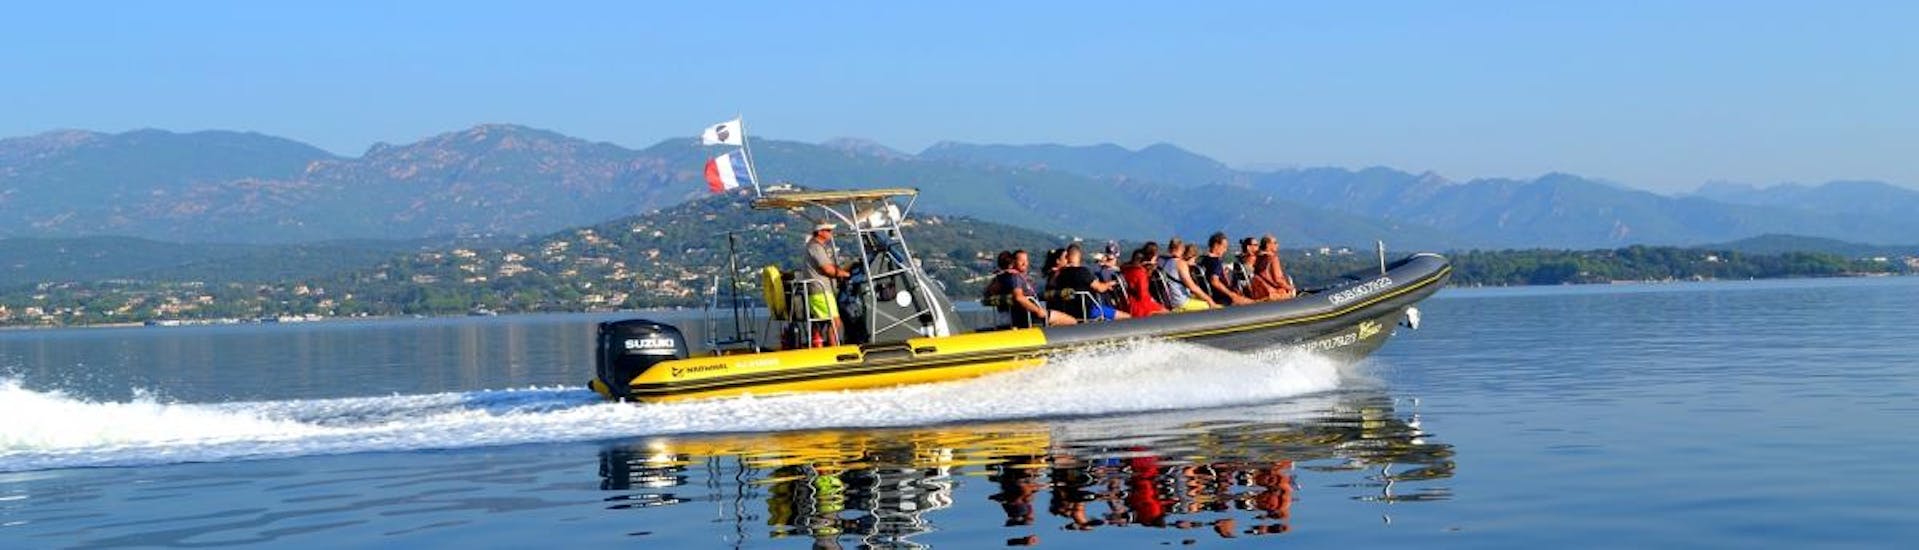 Das Boot navigiert auf dem tiefblauen Wasser während der Bootstour zum Strand von Roccapina und in den Süden Korsikas von Santa Giulia